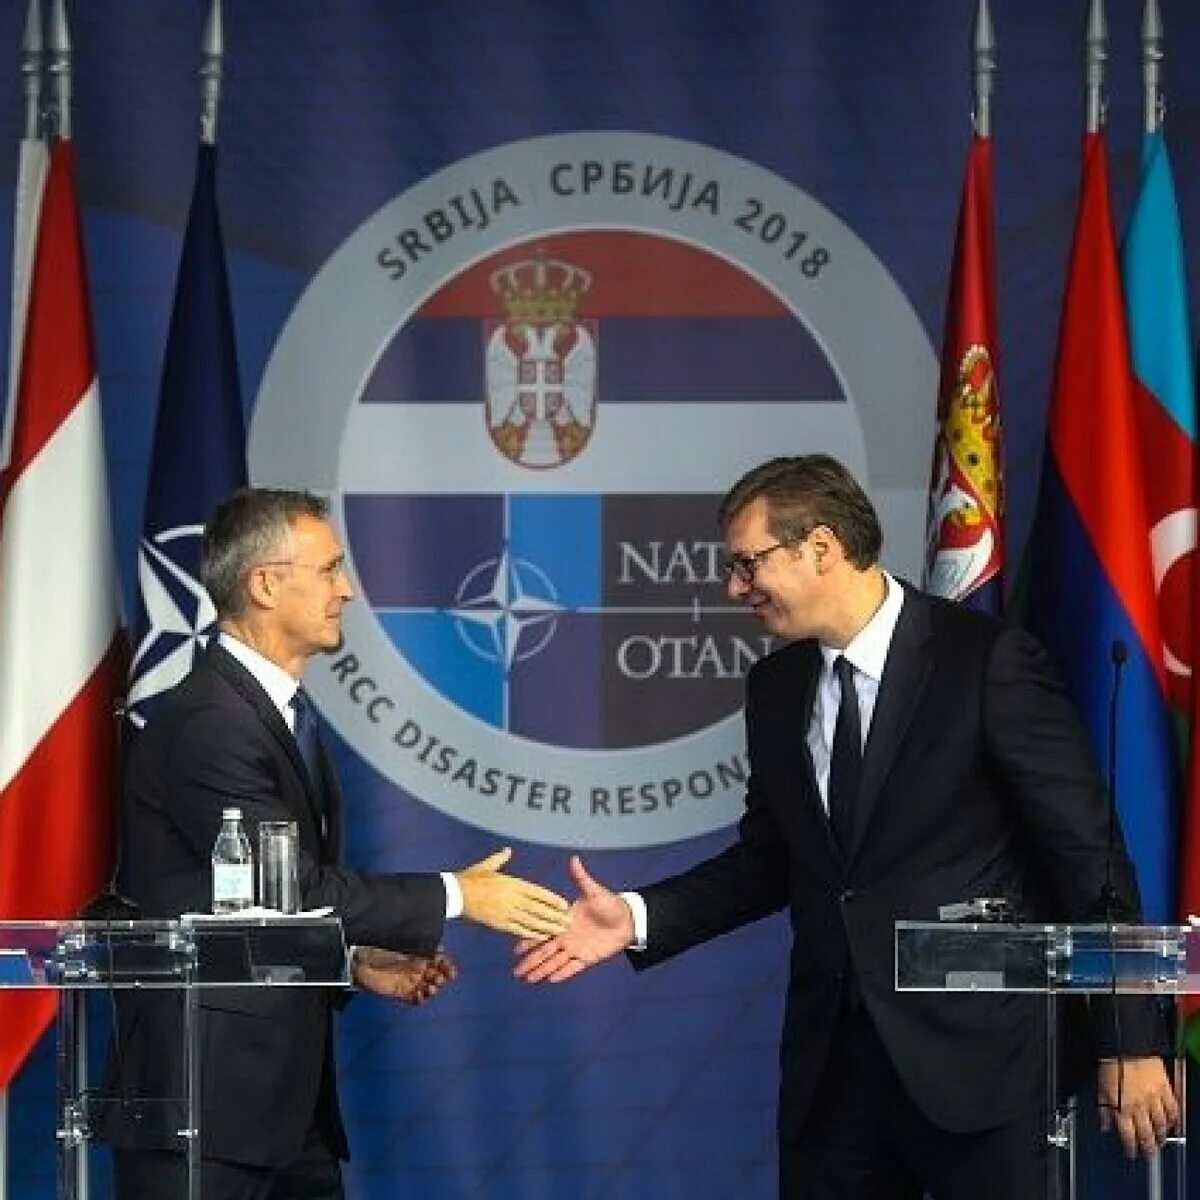 Сербия состоит в нато. Вучич 1999 НАТО. Вучич и Столтенберг. Сербия в НАТО. Сербия вступает в НАТО.